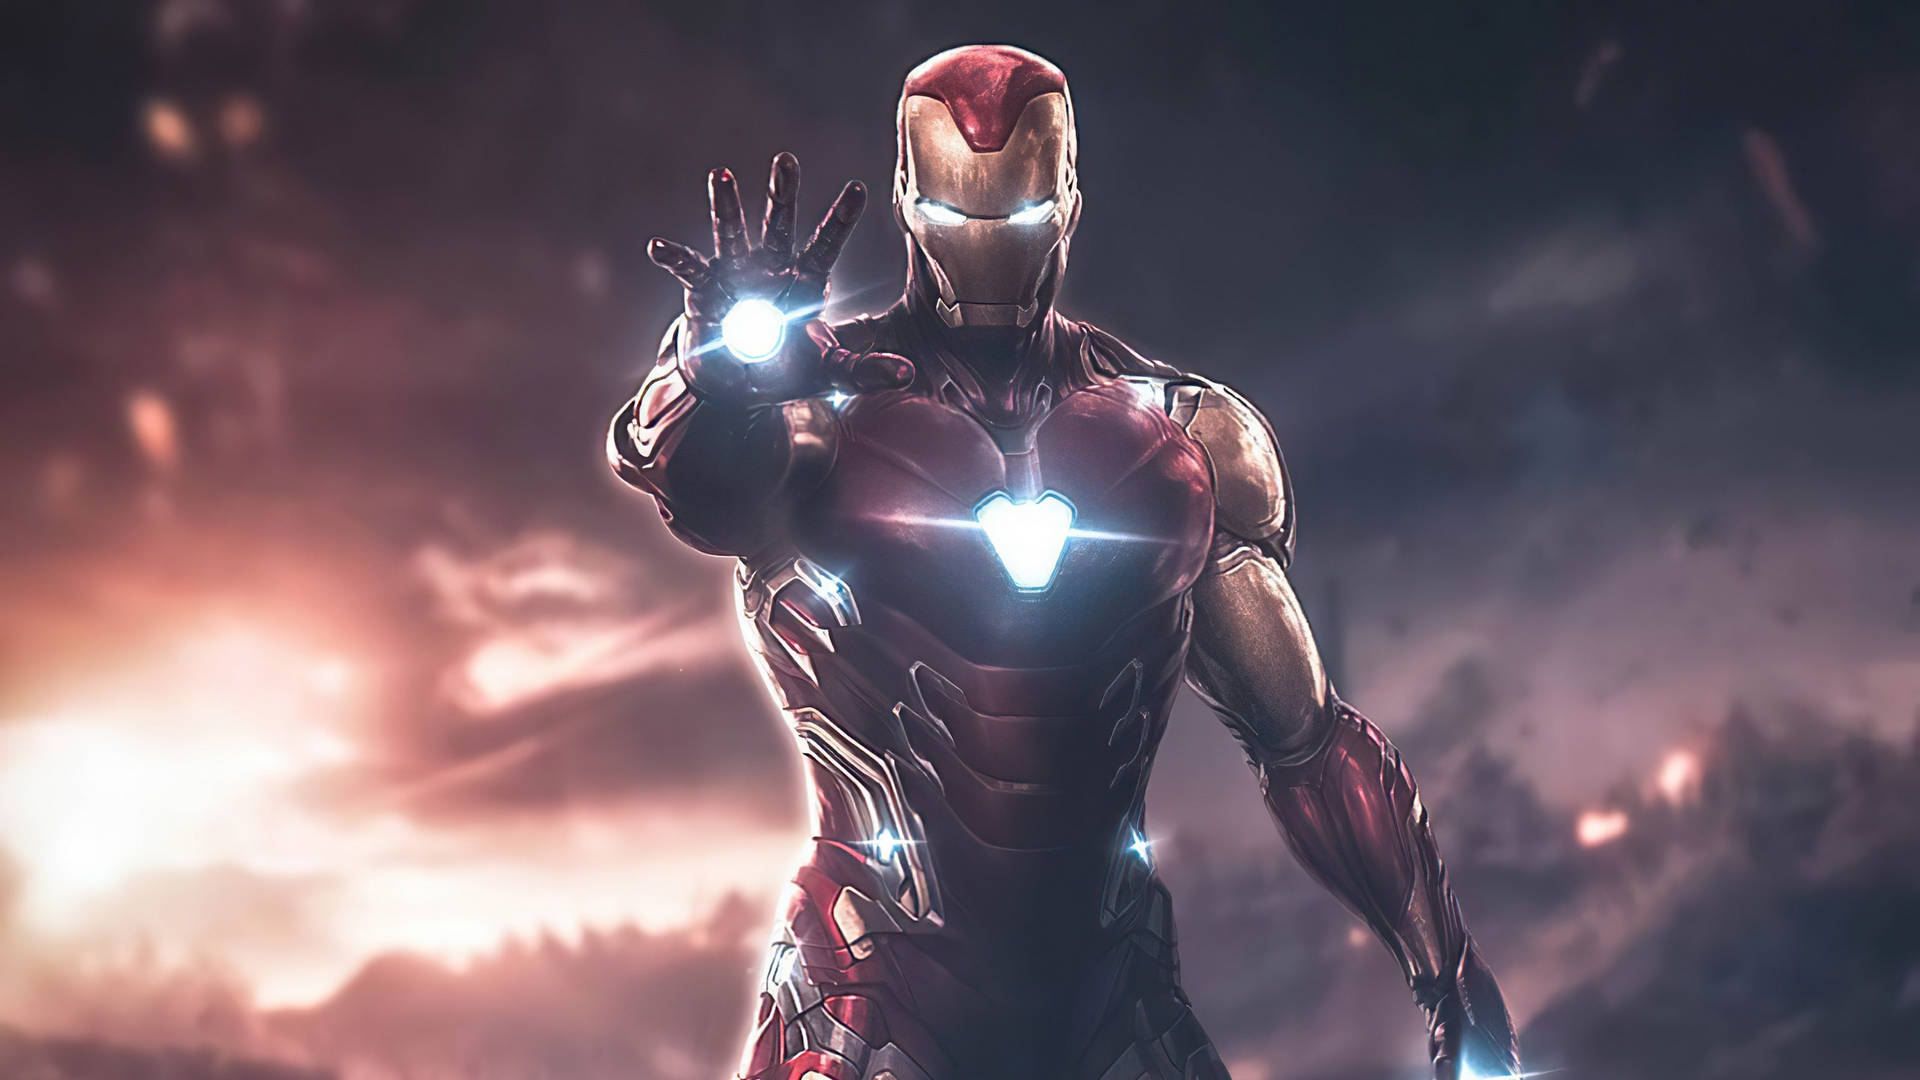 Cinematisktfoto Av Iron Man Superhjälte. Wallpaper